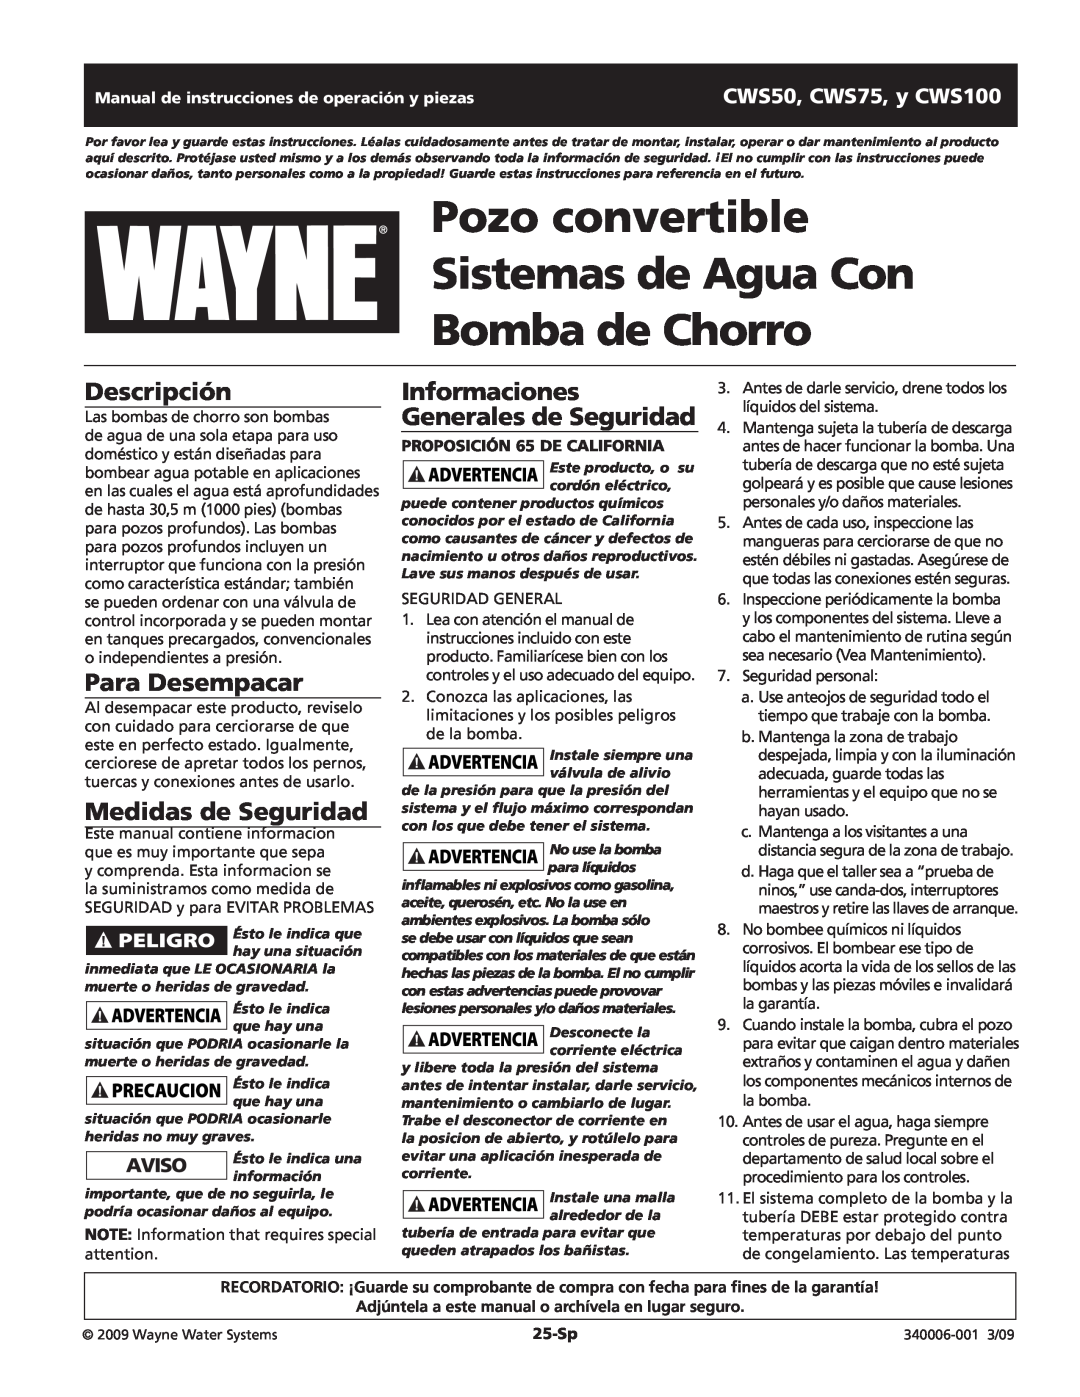 Wayne CWS75 Pozo convertible Sistemas de Agua Con, Bomba de Chorro, Descripción, Para Desempacar, Medidas de Seguridad 